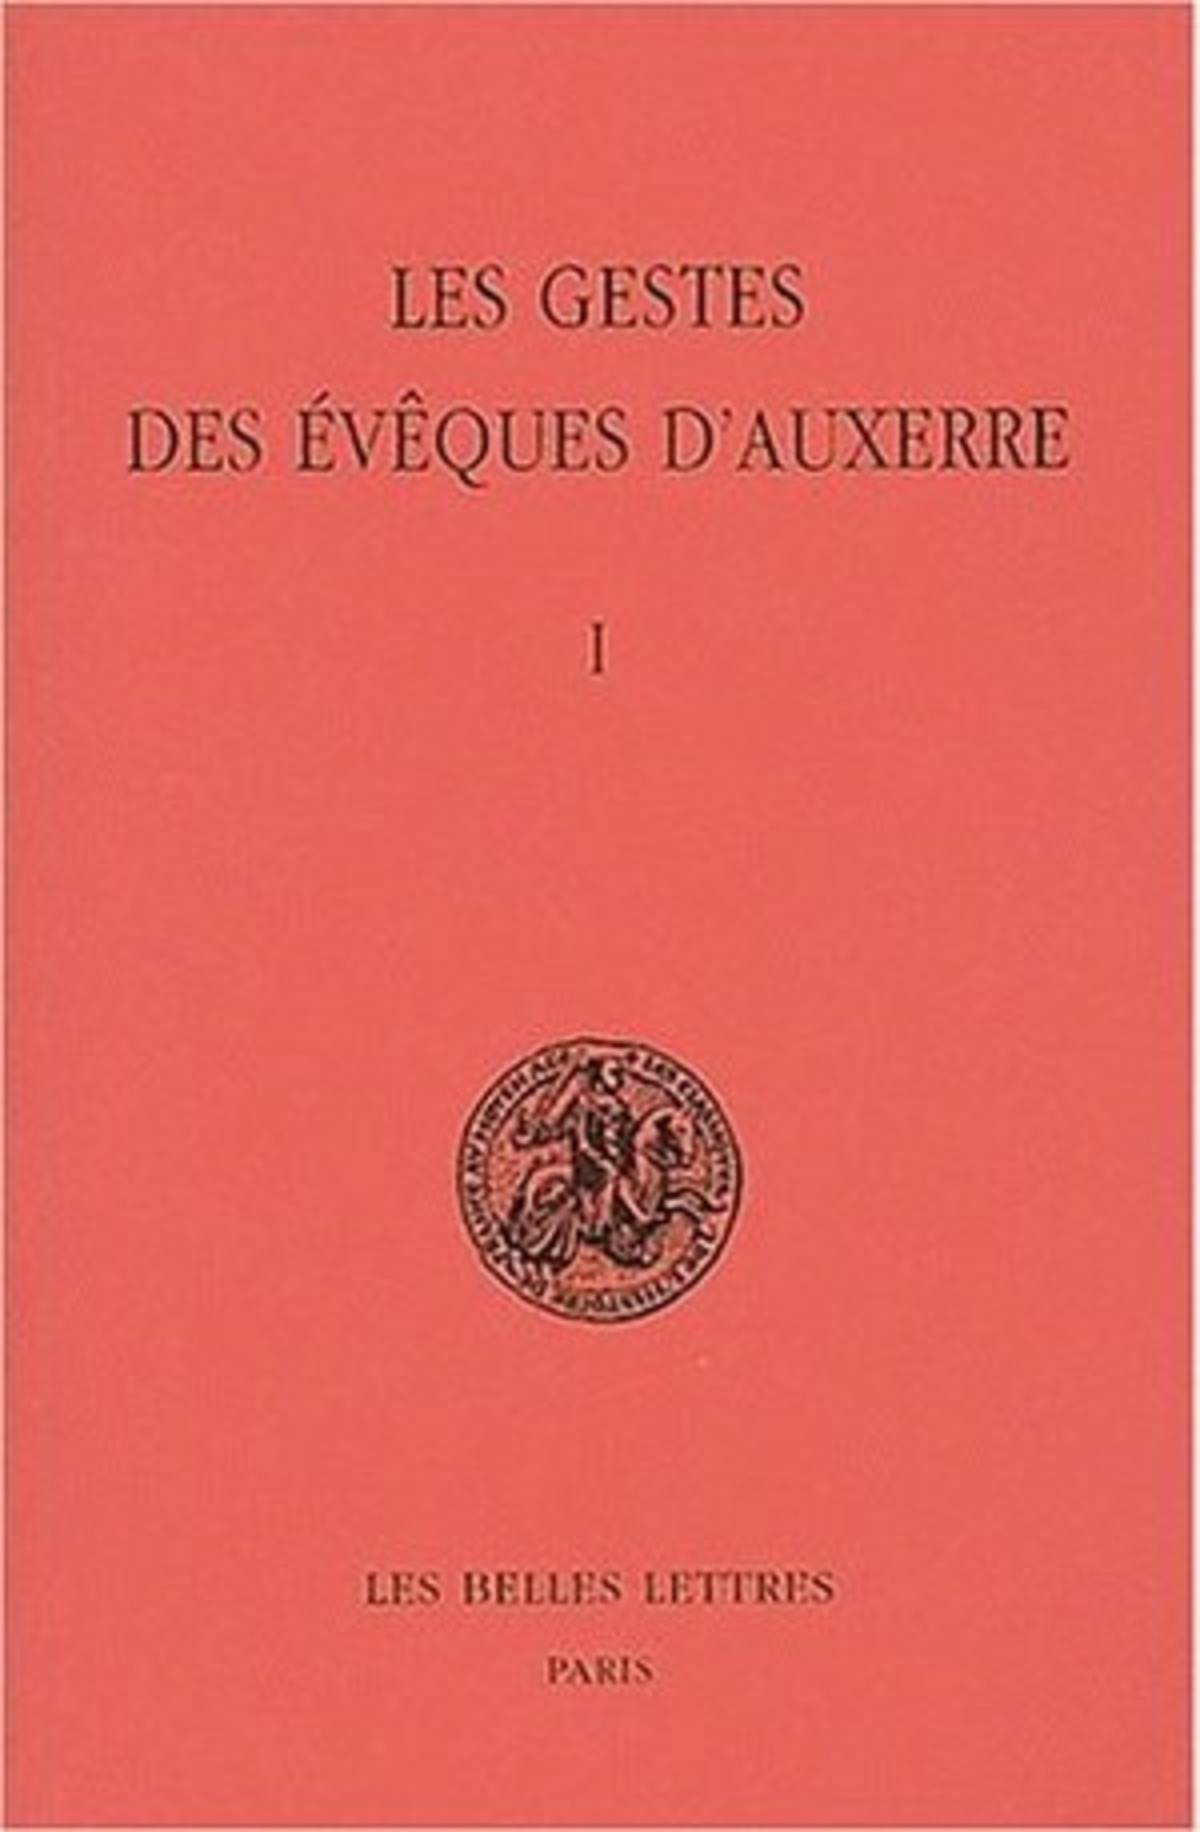 Les Gestes des évêques d'Auxerre. Tome I